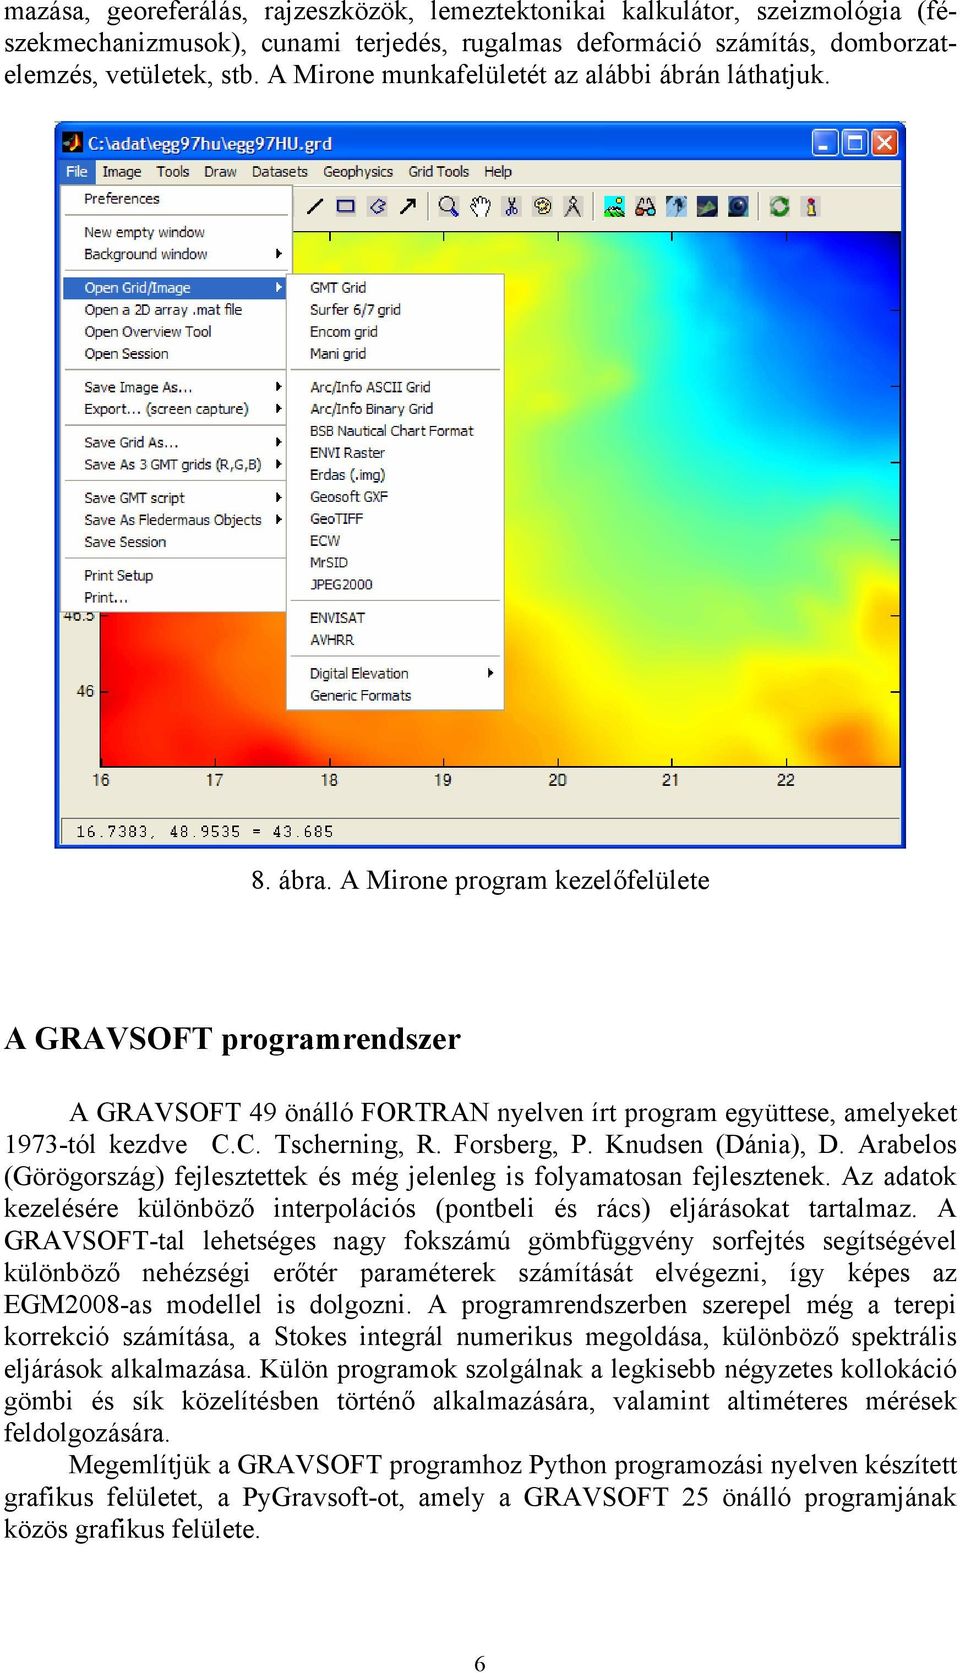 A Mirone program kezelőfelülete A GRAVSOFT programrendszer A GRAVSOFT 49 önálló FORTRAN nyelven írt program együttese, amelyeket 1973-tól kezdve C.C. Tscherning, R. Forsberg, P. Knudsen (Dánia), D.